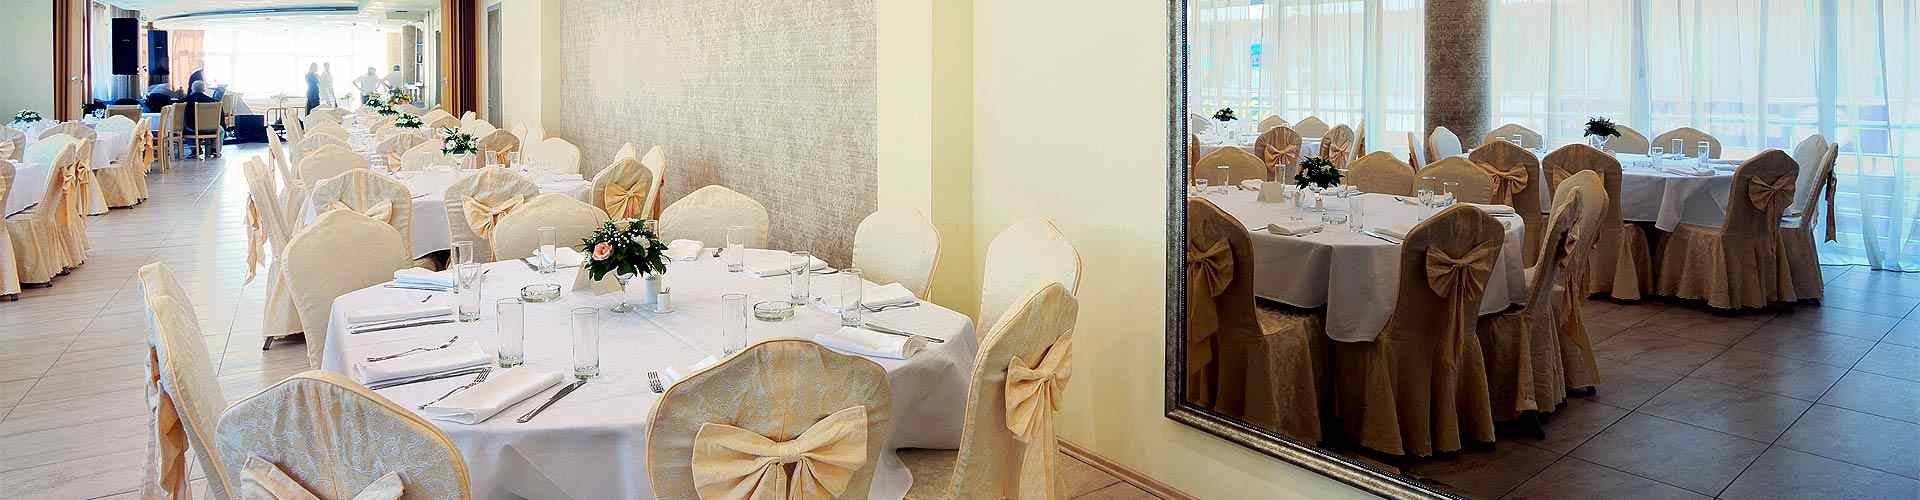 Restaurantes para bodas 2019 en Berrocal de Huebra